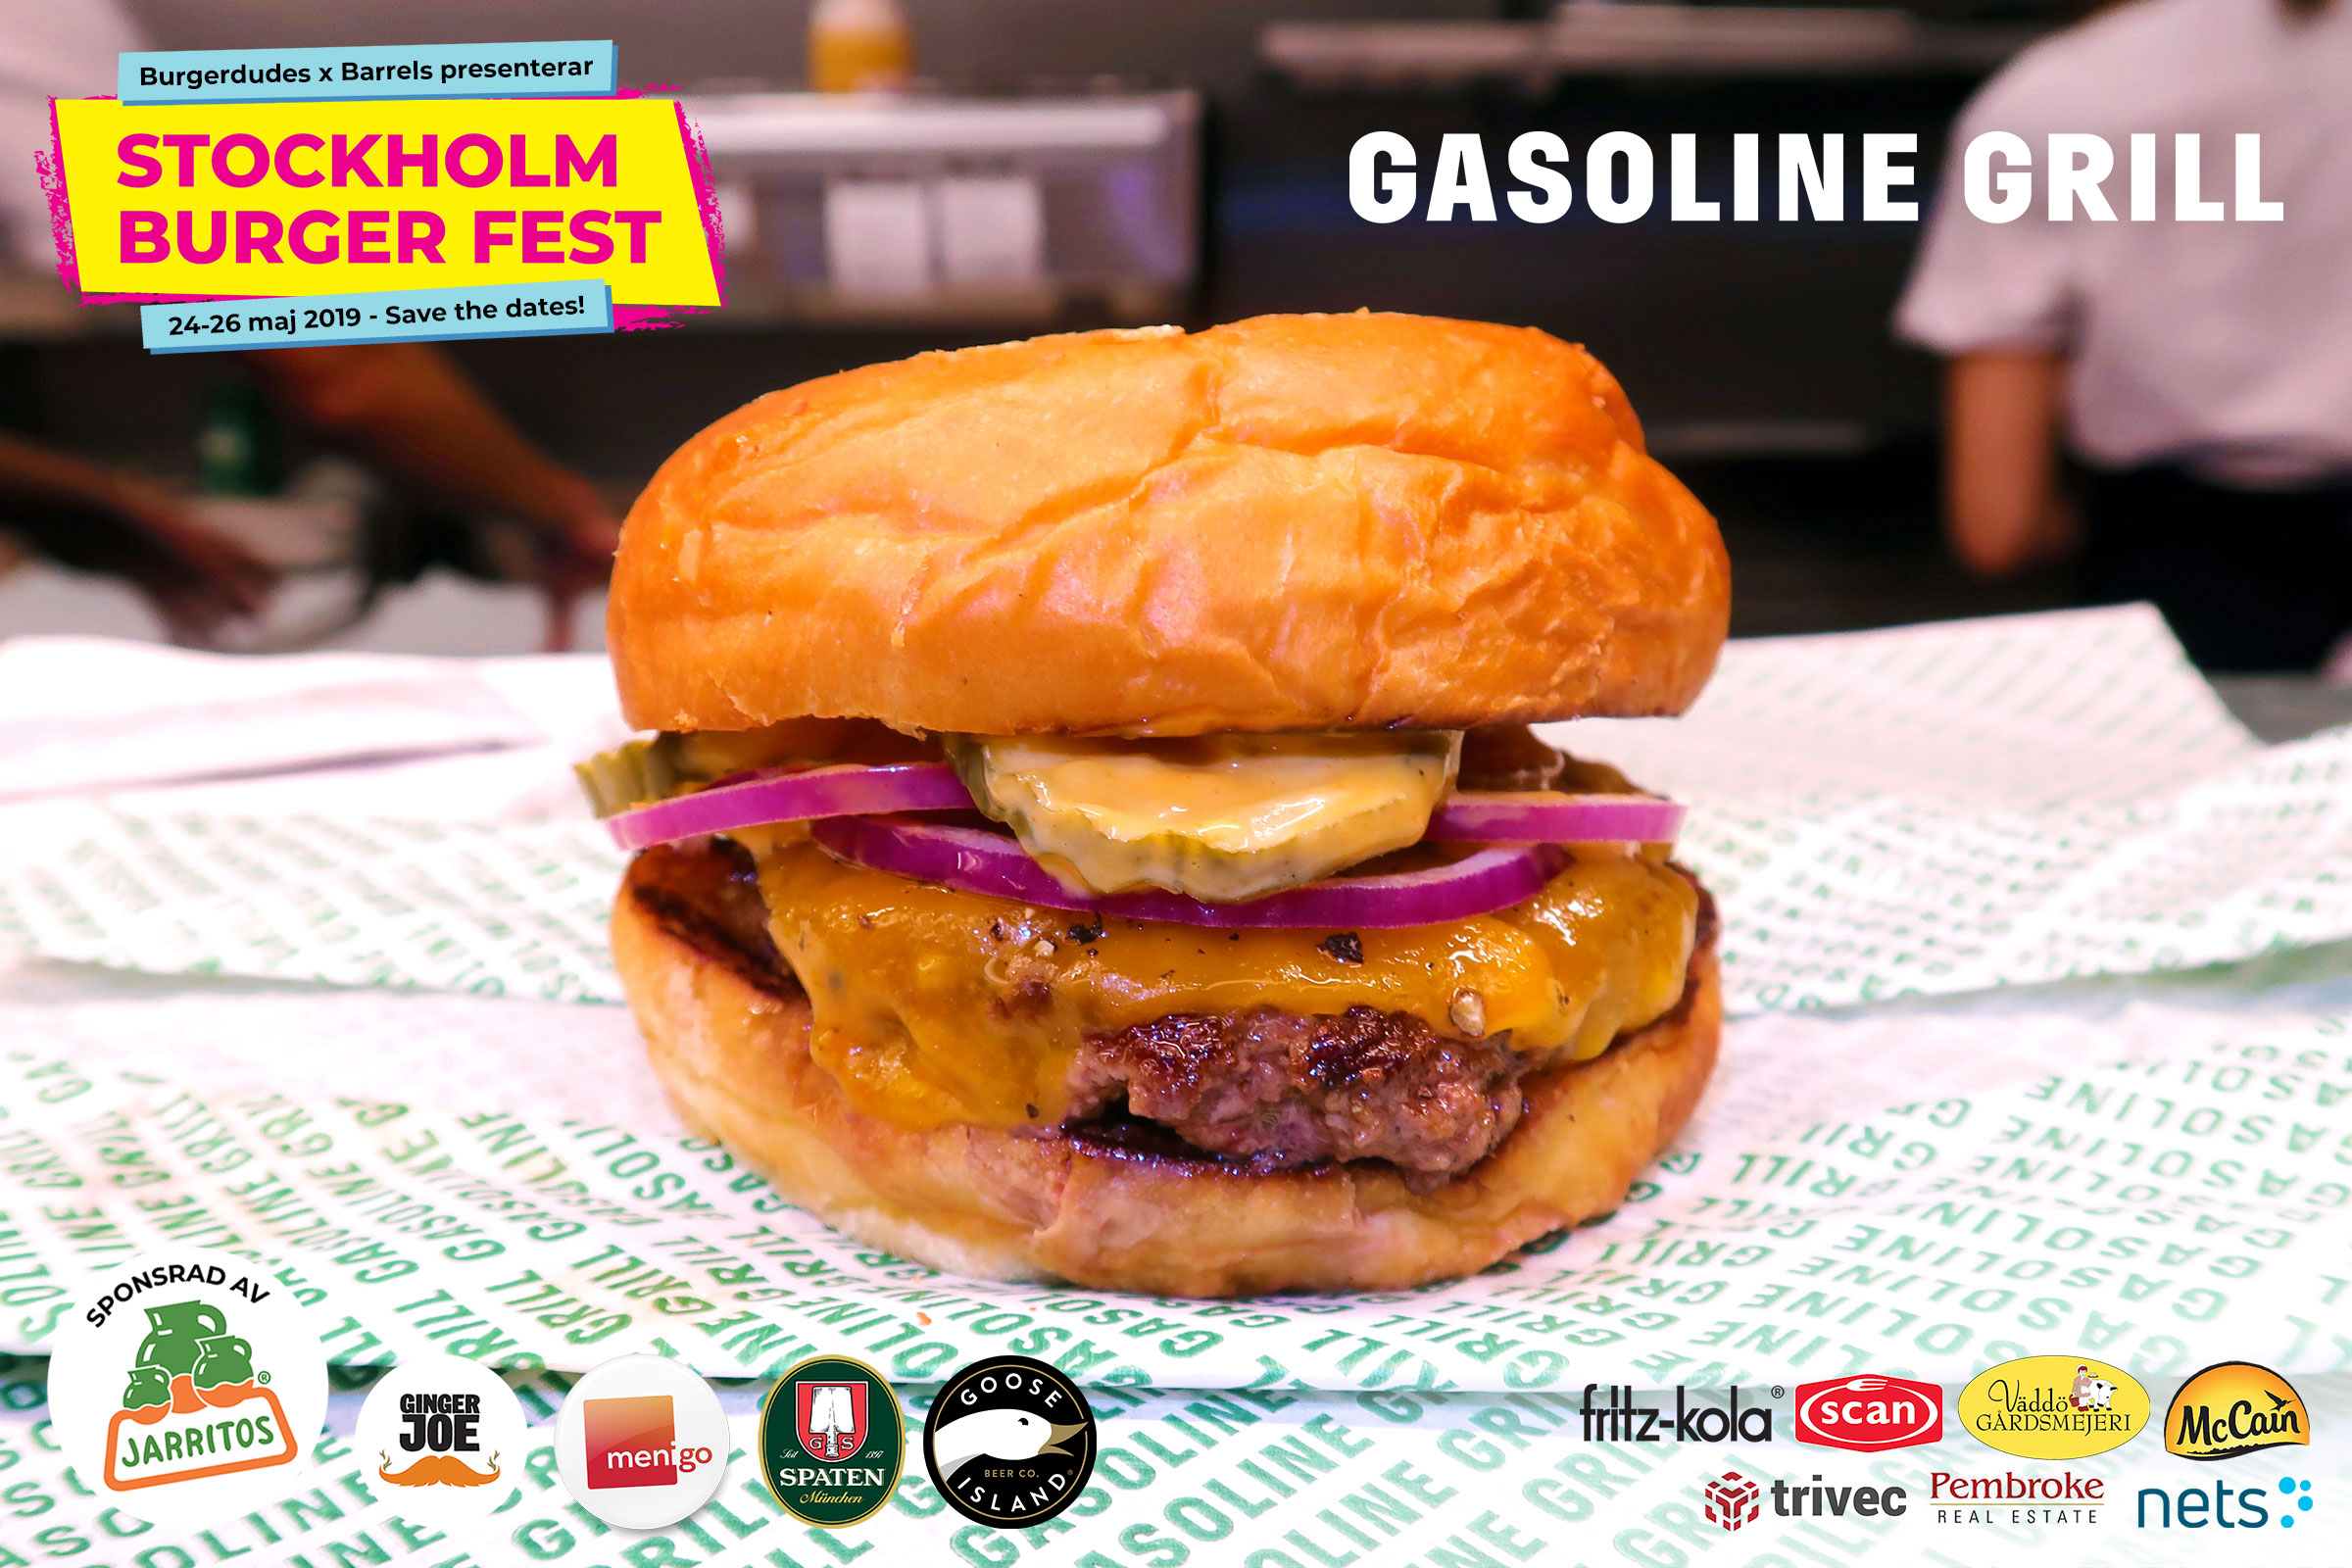 Gasoline Grill - Stockholm Burger Fest 2019